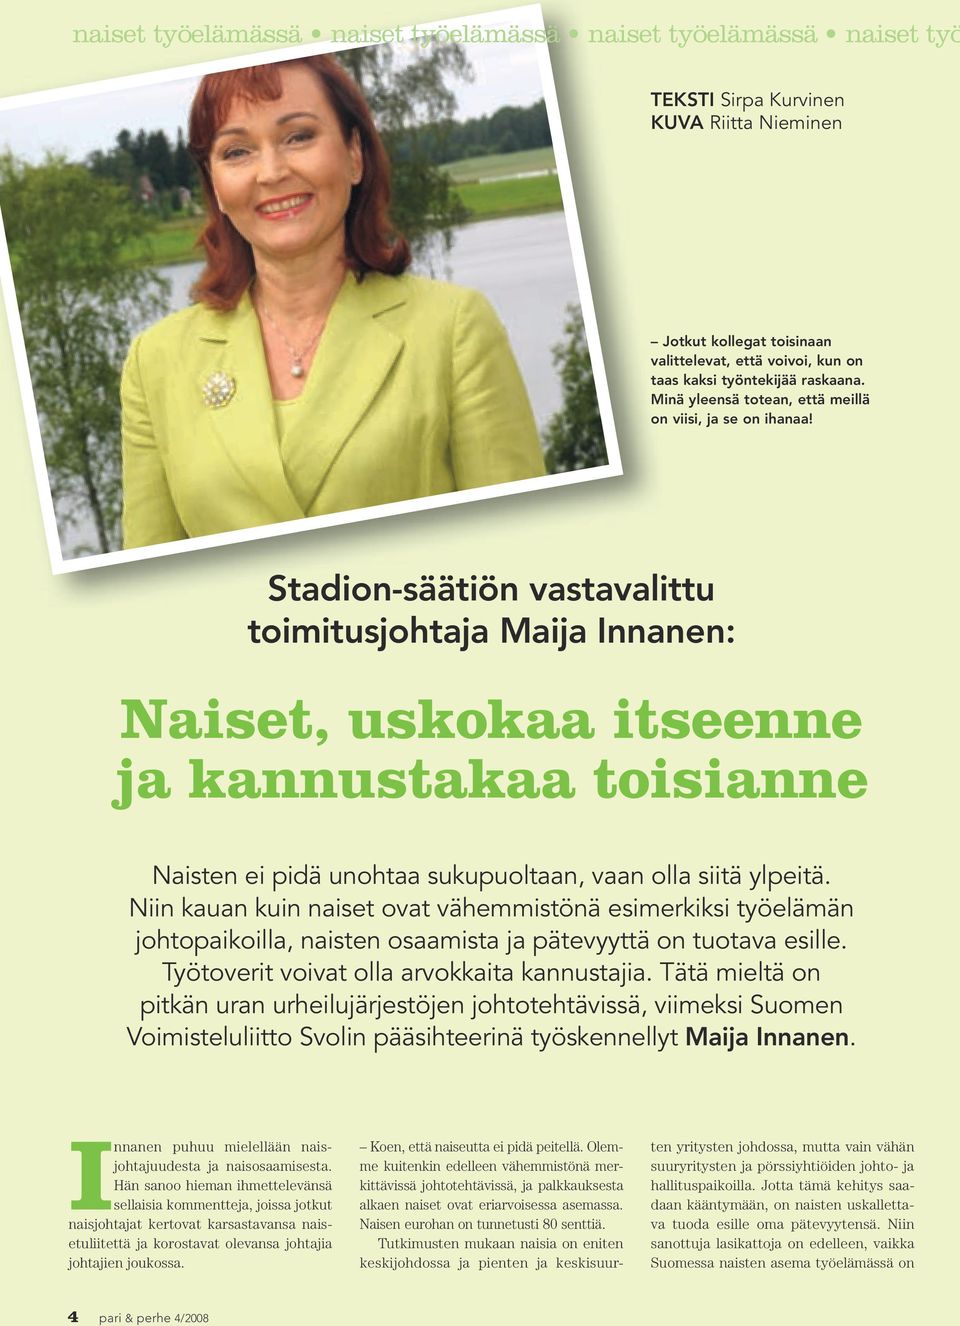 Stadion-säätiön vastavalittu toimitusjohtaja Maija Innanen: Naiset, uskokaa itseenne ja kannustakaa toisianne Naisten ei pidä unohtaa sukupuoltaan, vaan olla siitä ylpeitä.